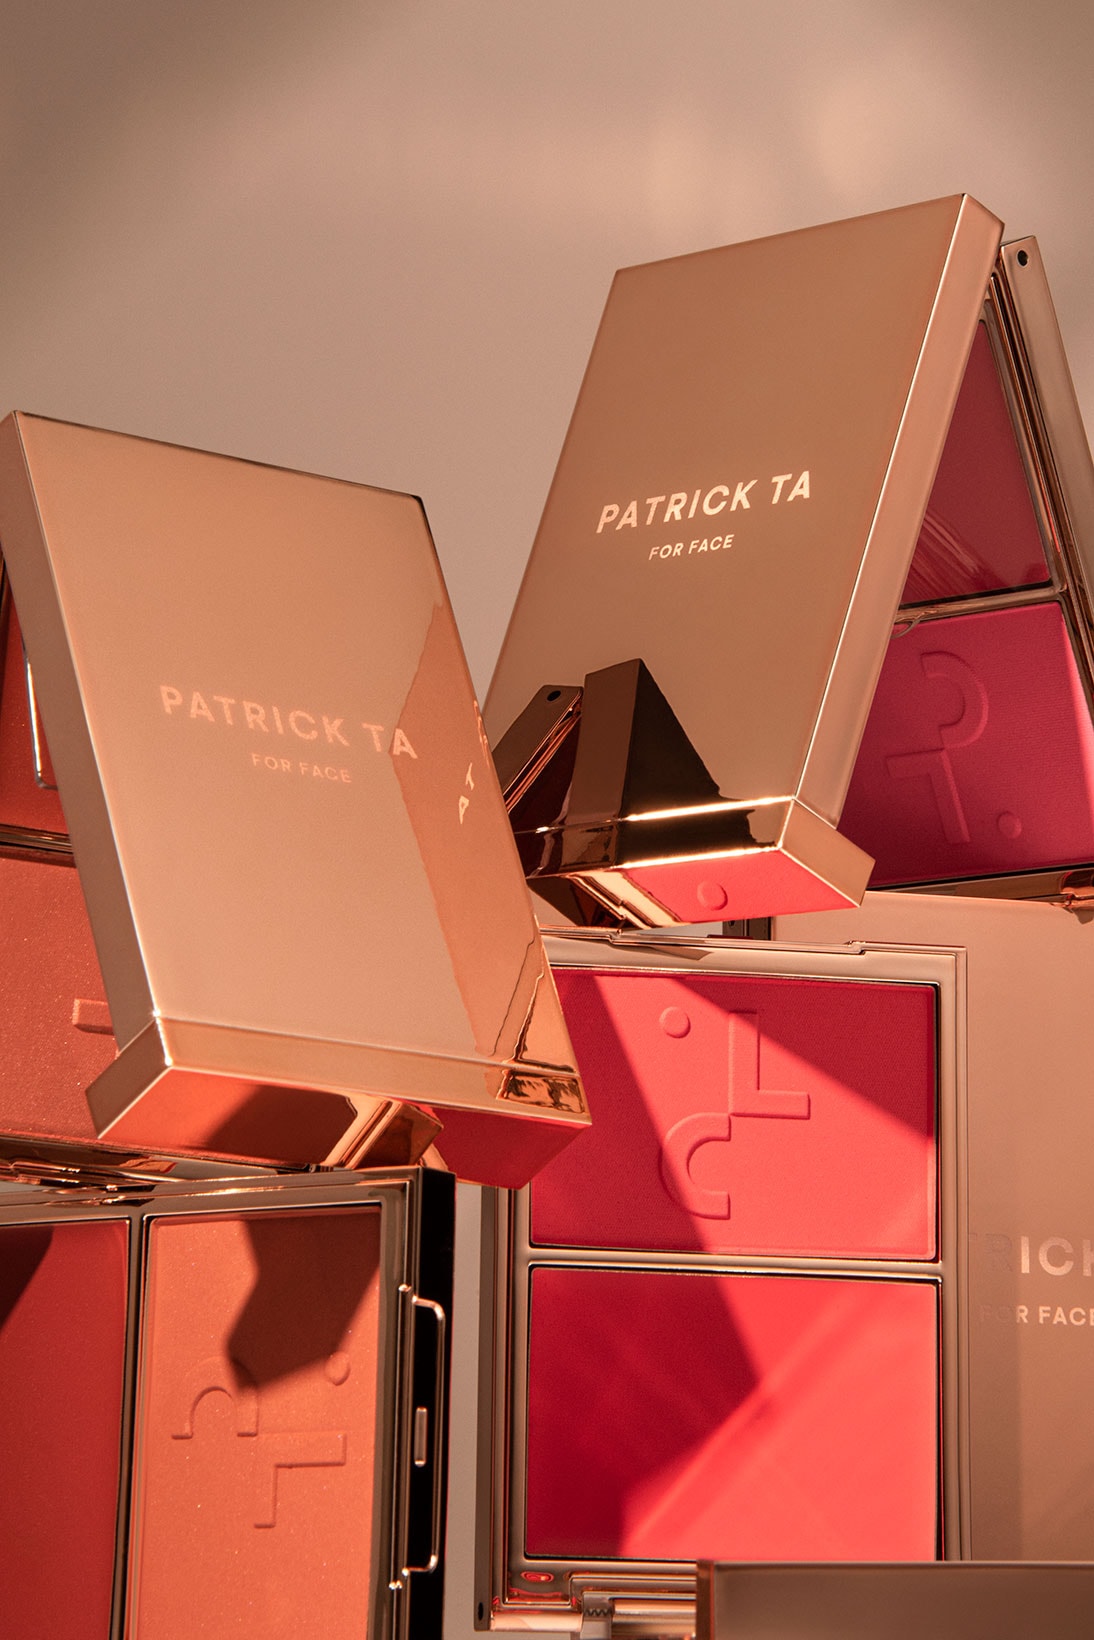 Patrick Ta Beauty Major Headlines Double Take Crème Powder Blush Makeup